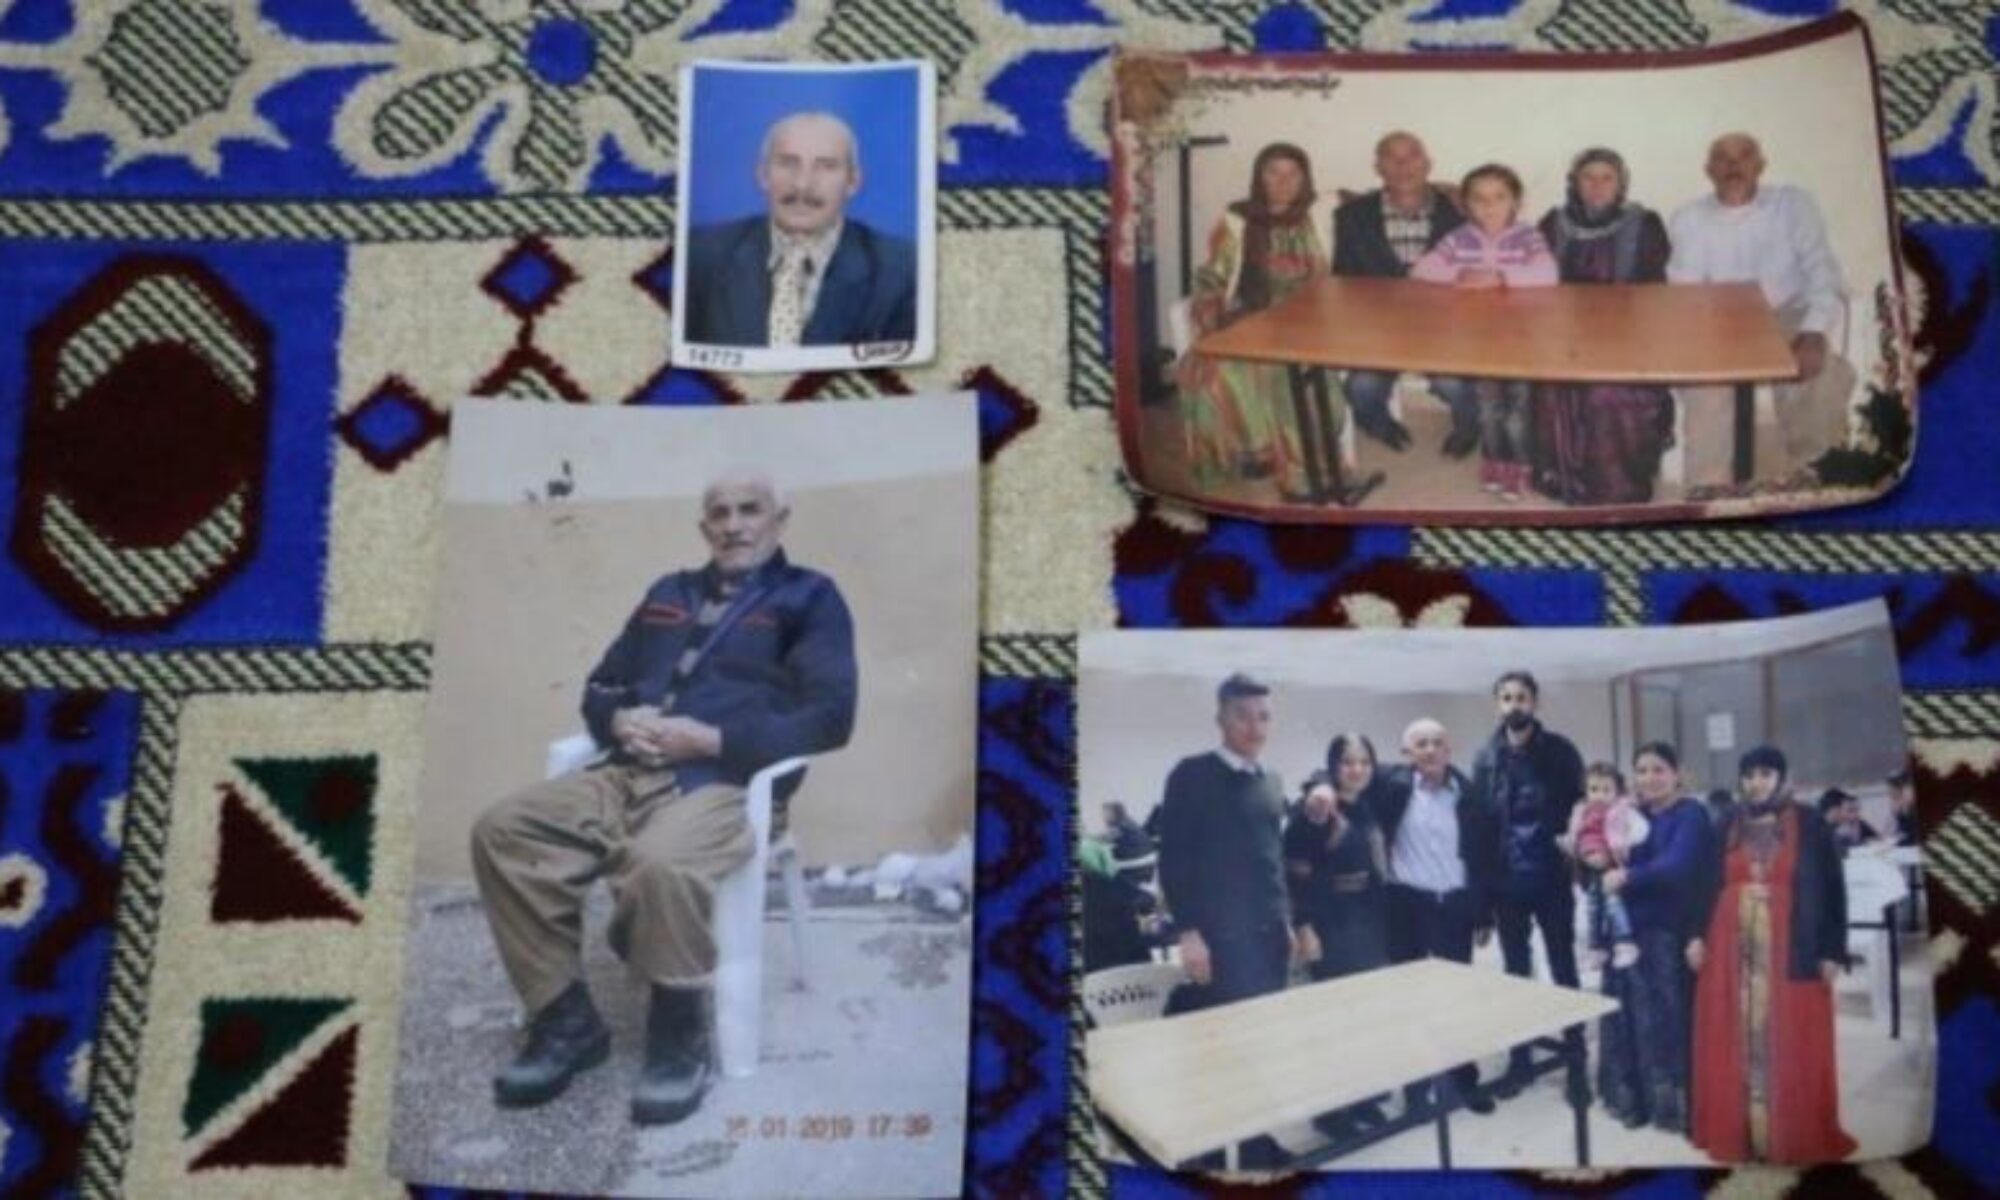 Türk devletinin Kürt düşmanlığı: 70 yaşındaki kişinin cenazesine tabut verilmedi, cenazenin hastanede yıkanmasına izin verilmedi